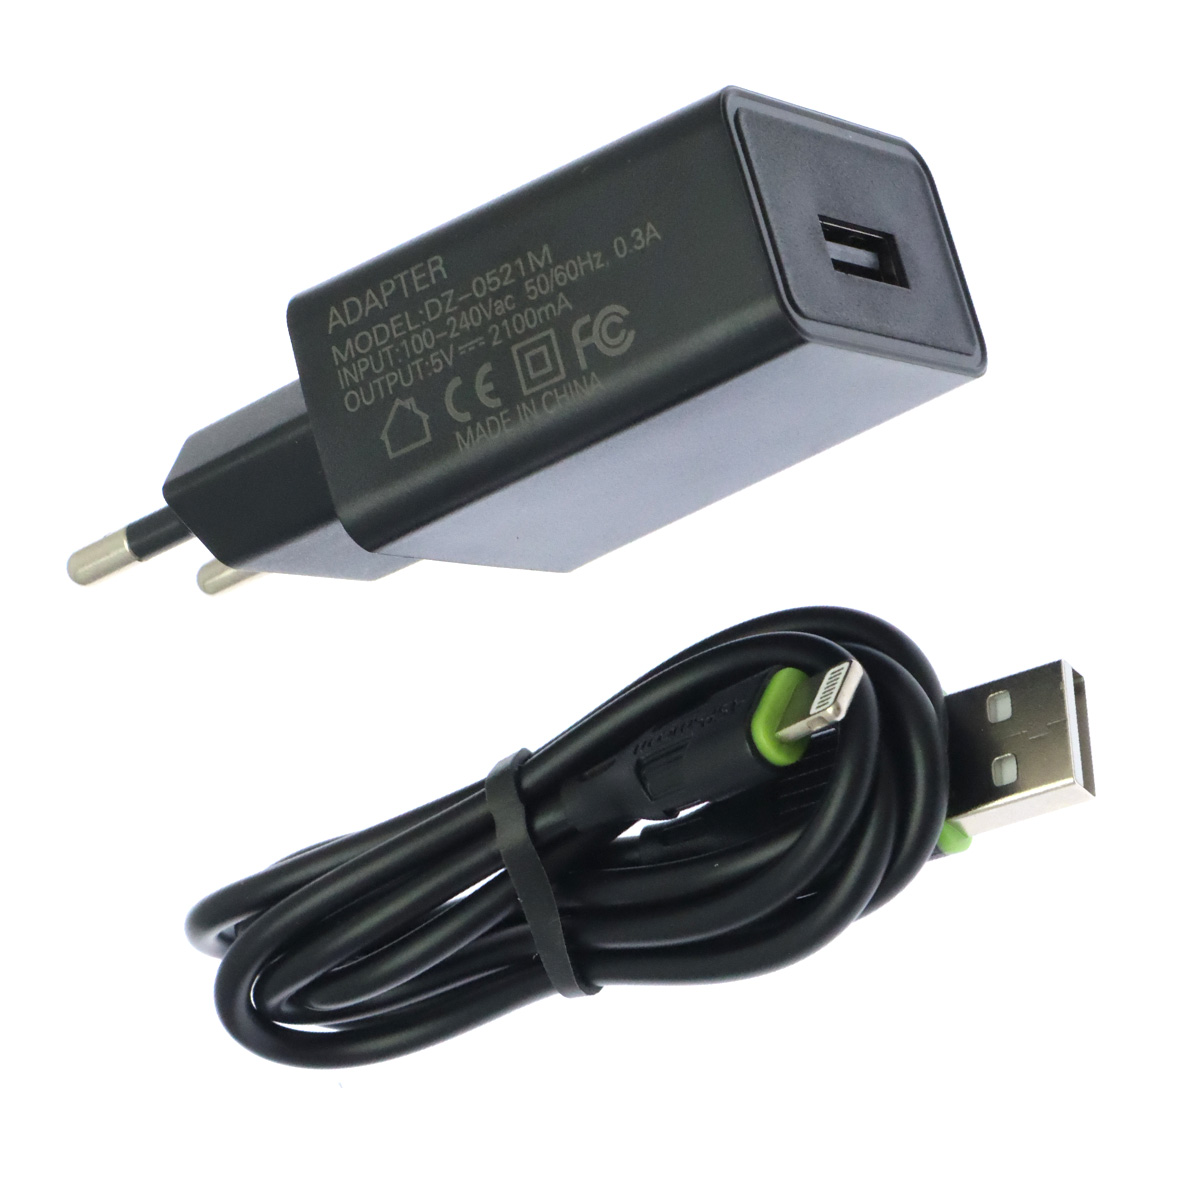 СЗУ (Сетевое зарядное устройство) ASPsmcon A001 с кабелем Lightning 8 pin, 2.1A, 1 USB, длина 1 метр, цвет черный